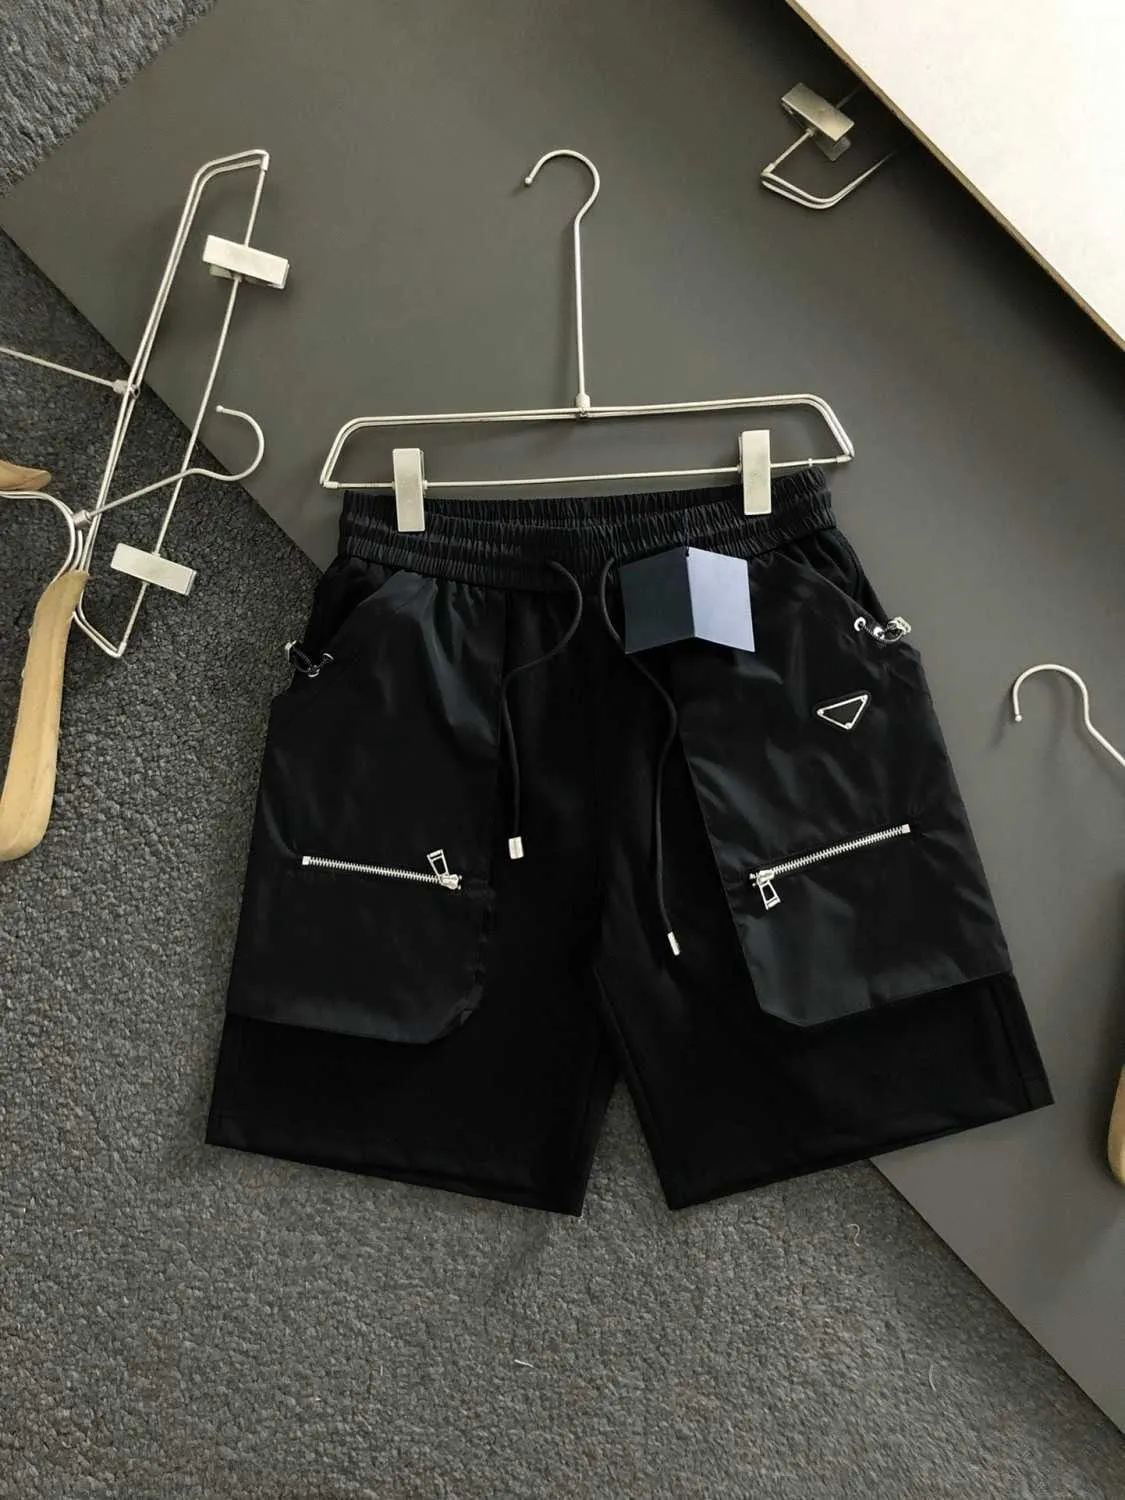 Shorts soltos de carga casual de metal com vários bolsos para homens de verão, shorts esportivos de tendência solta, todos os bolsos são práticos e convenientes, vento de carga esportiva.